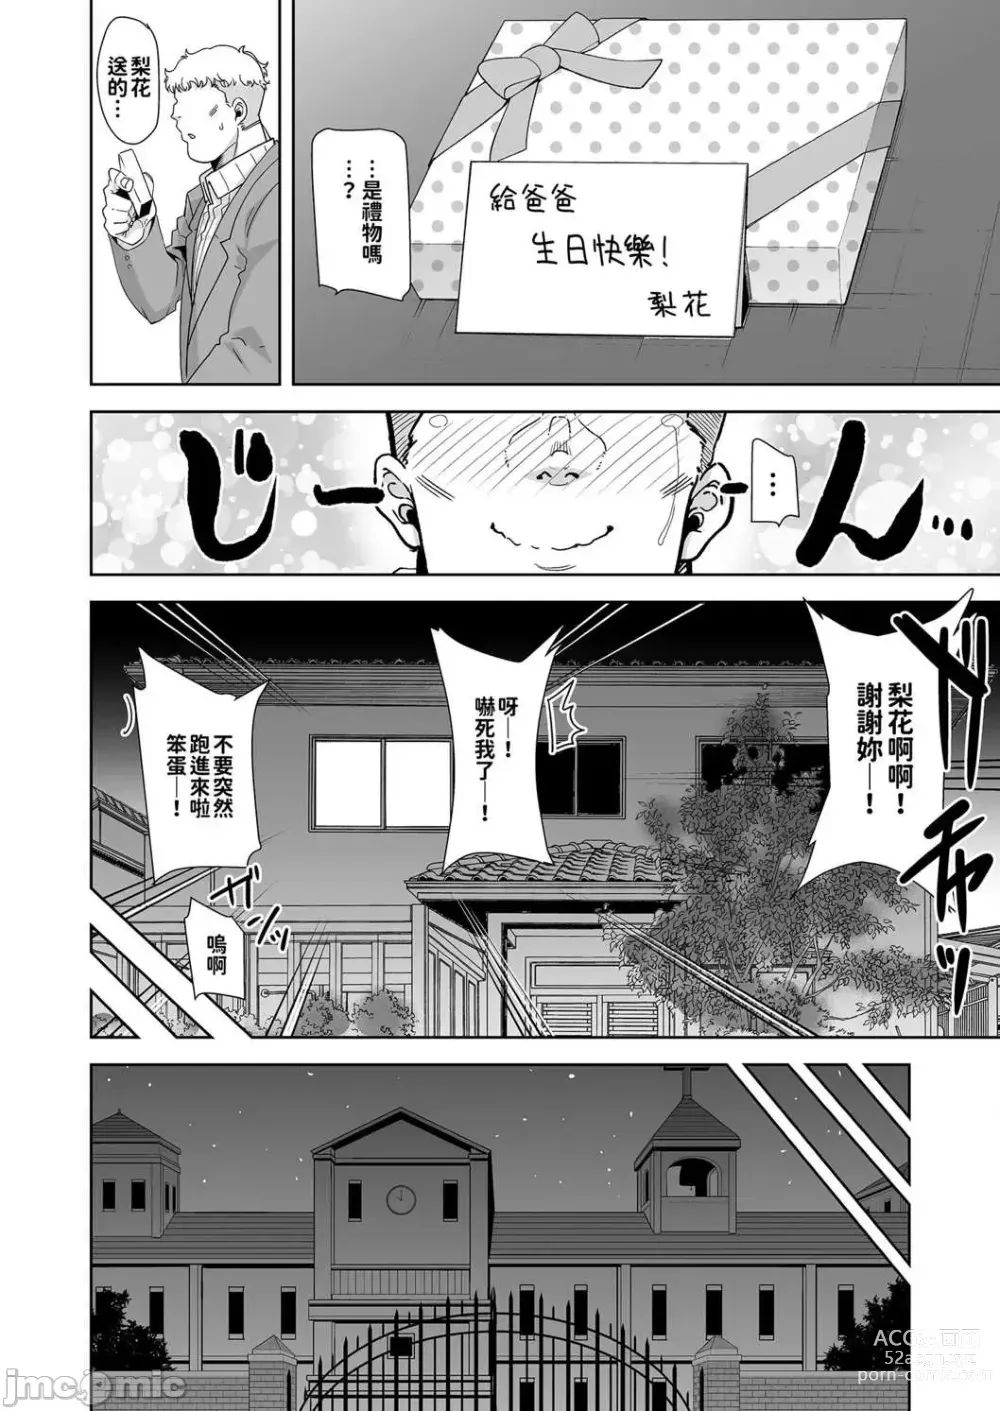 Page 39 of doujinshi dZCZsdfgsd3